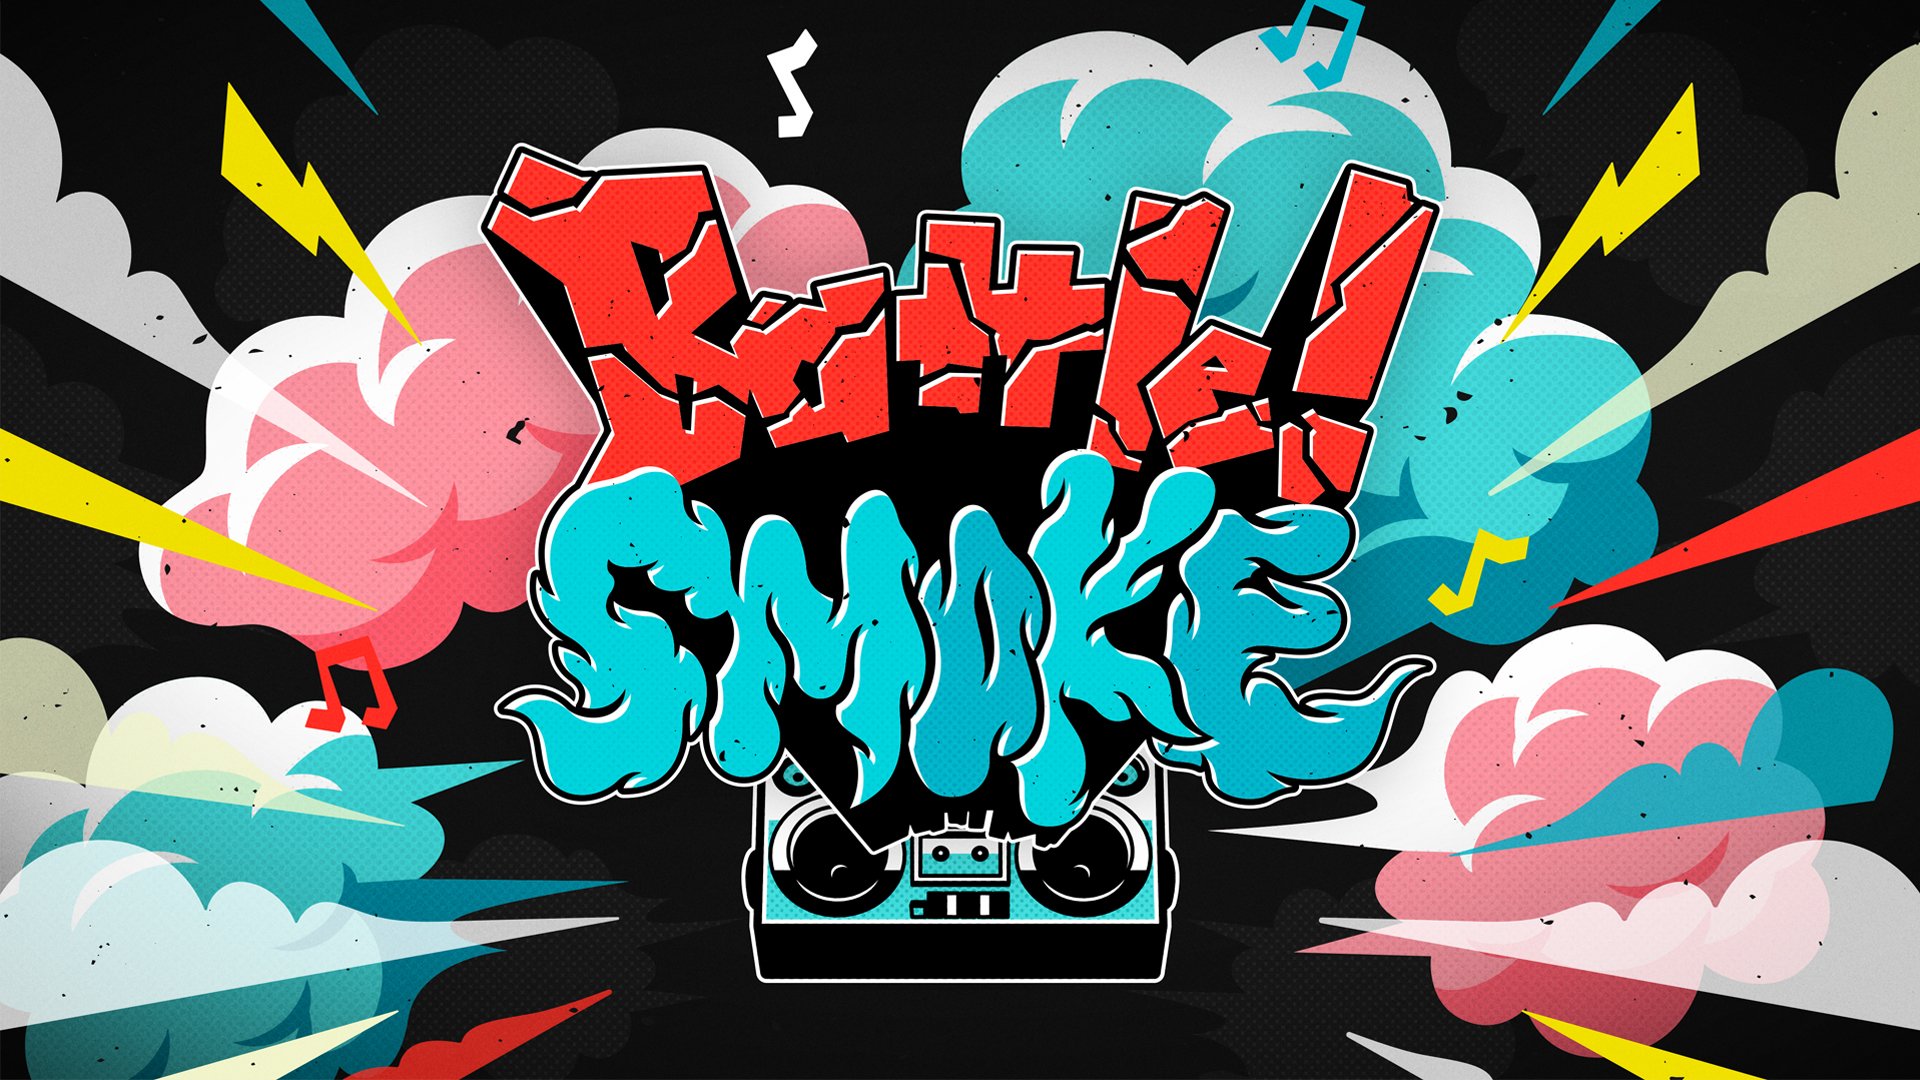 FANY マガジン：BSよしもとでダンスバトル! 新番組「Batlle! SMOKE」4月23日放送スタート!